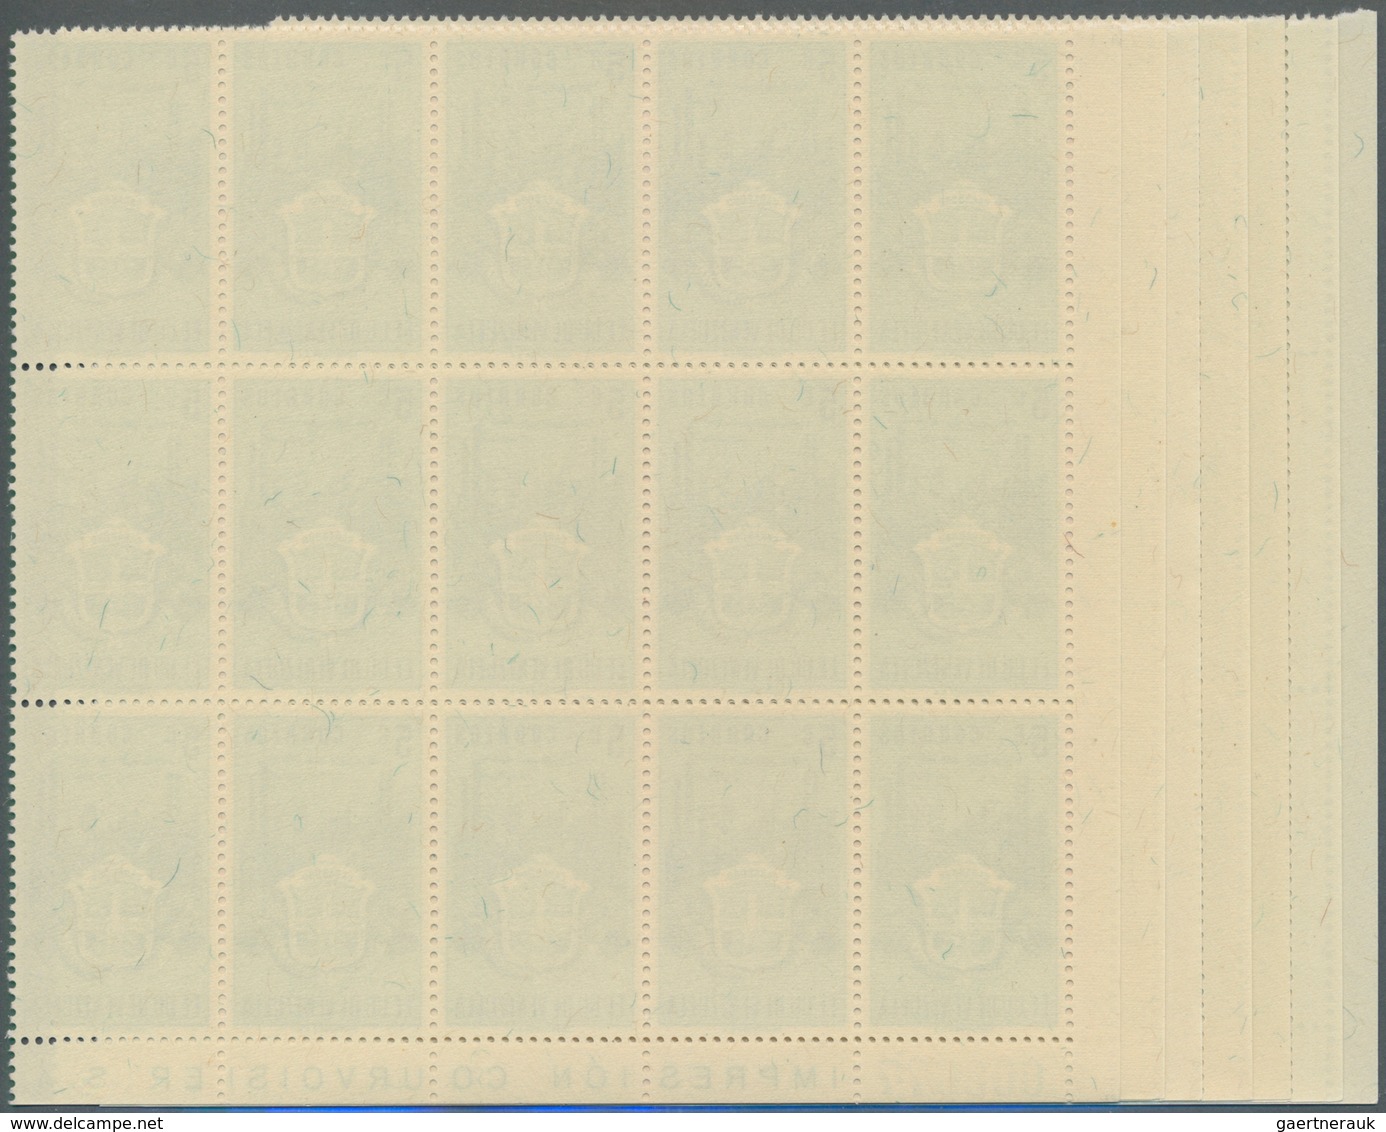 Venezuela: 1951, Coat Of Arms 'CARABOBO‘ Normal Stamps Complete Set Of Seven In Blocks Of 15, Mint N - Venezuela